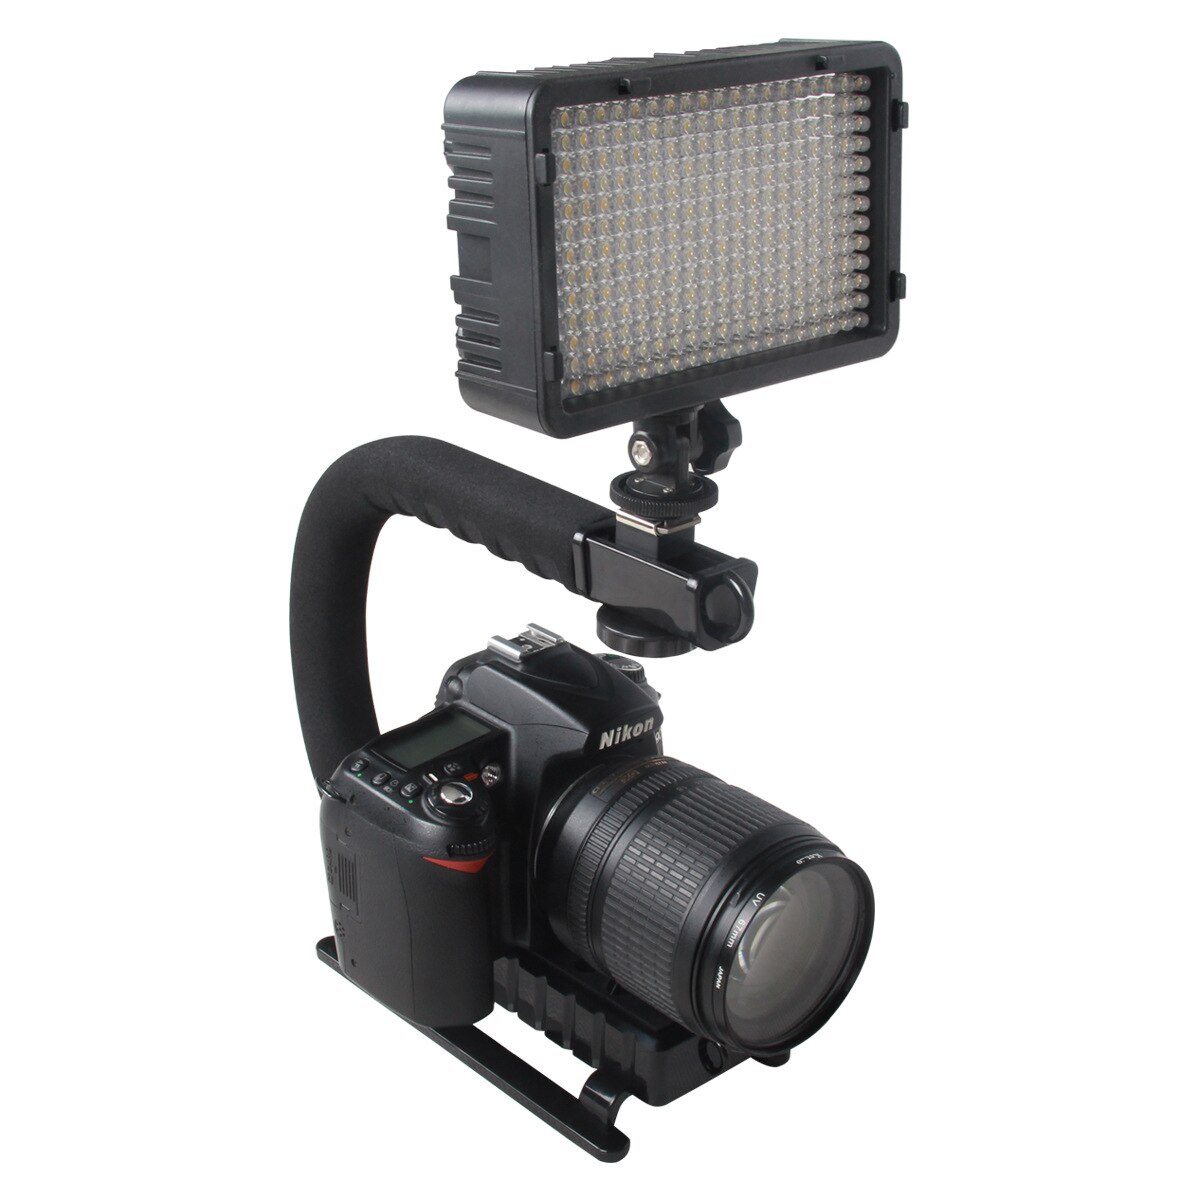 C Förmigen Halfter Griff Video Handheld Gimbal Stabilisator für DSLR Nikon Kanon Sony Kamera und Licht Tragbare Steadicam